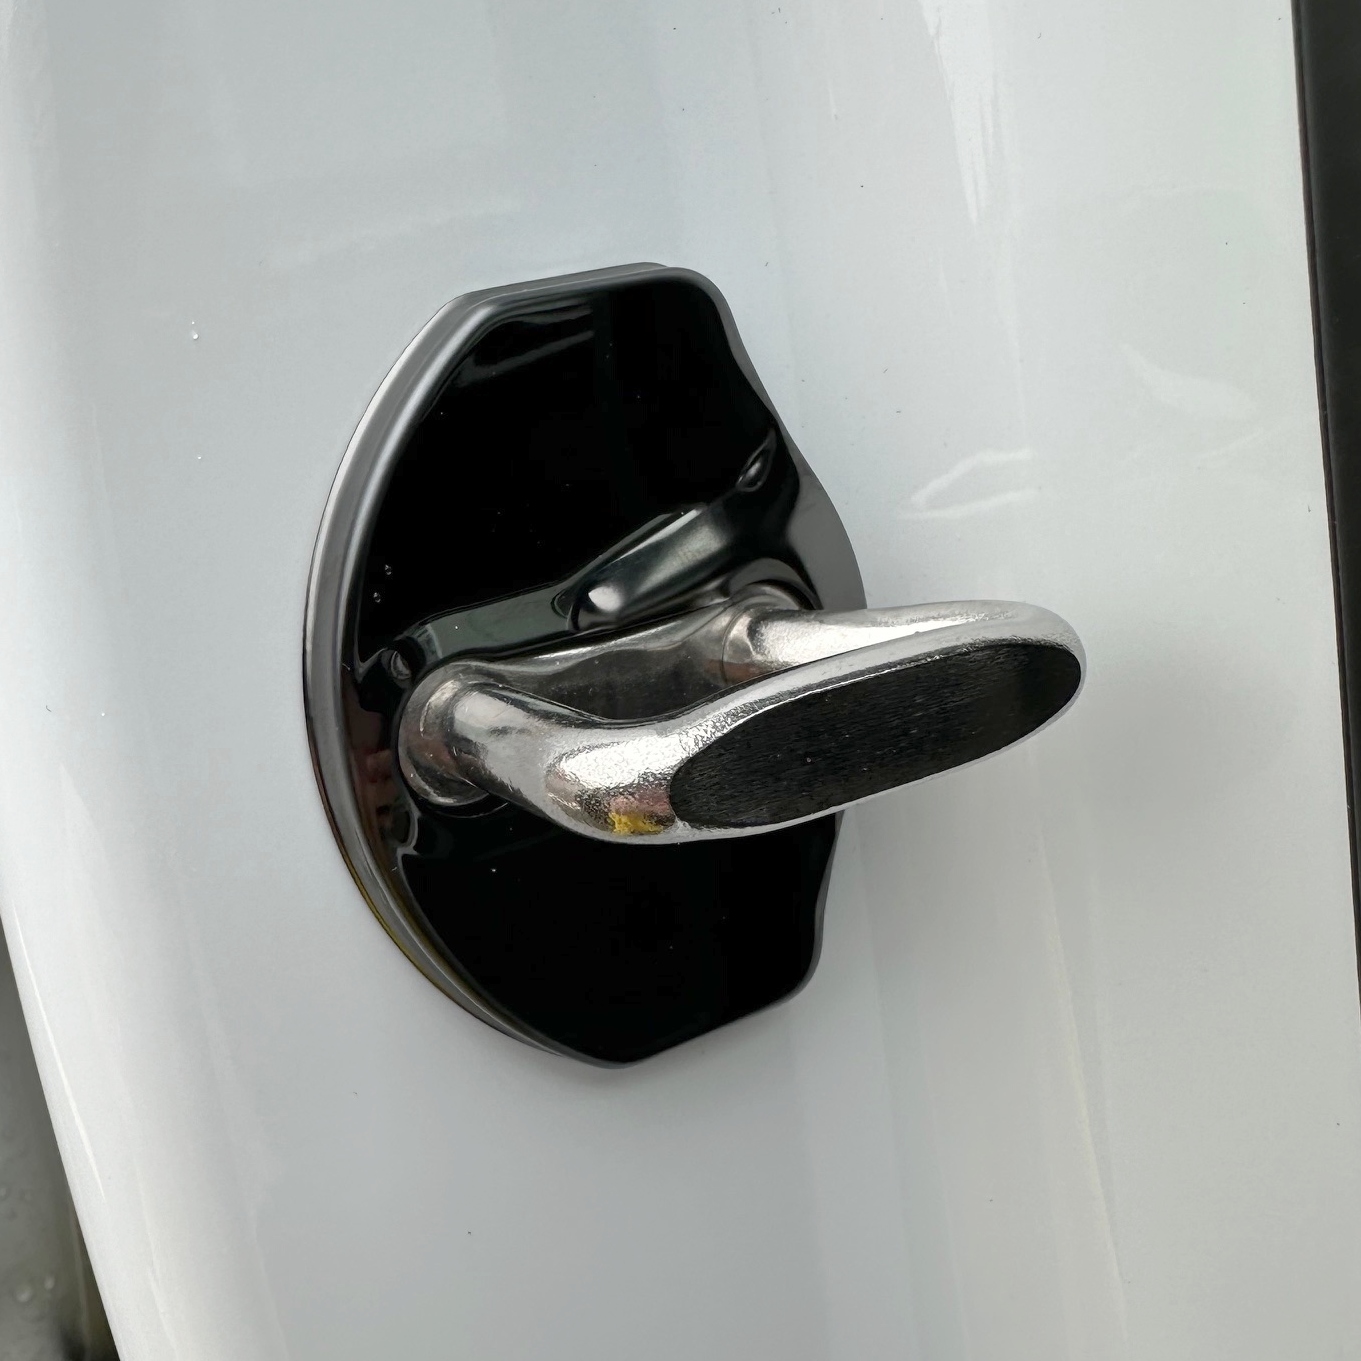 Kåpor till dörrlåset, set om 4 - svarta - Tesla Model 3 Highland